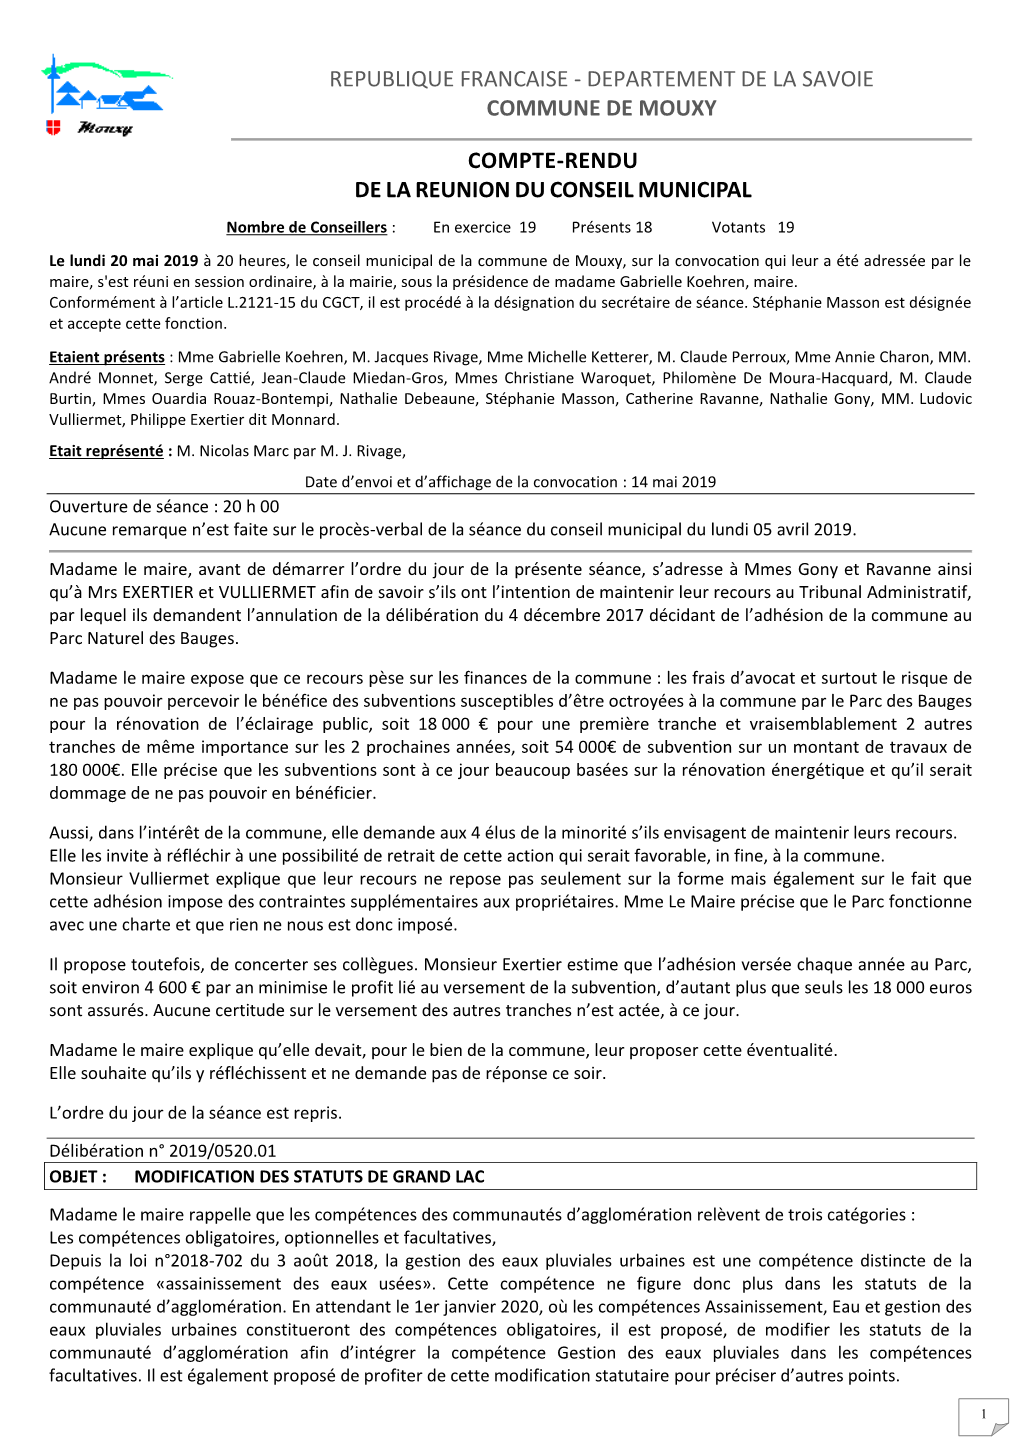 Republique Francaise - Departement De La Savoie Commune De Mouxy